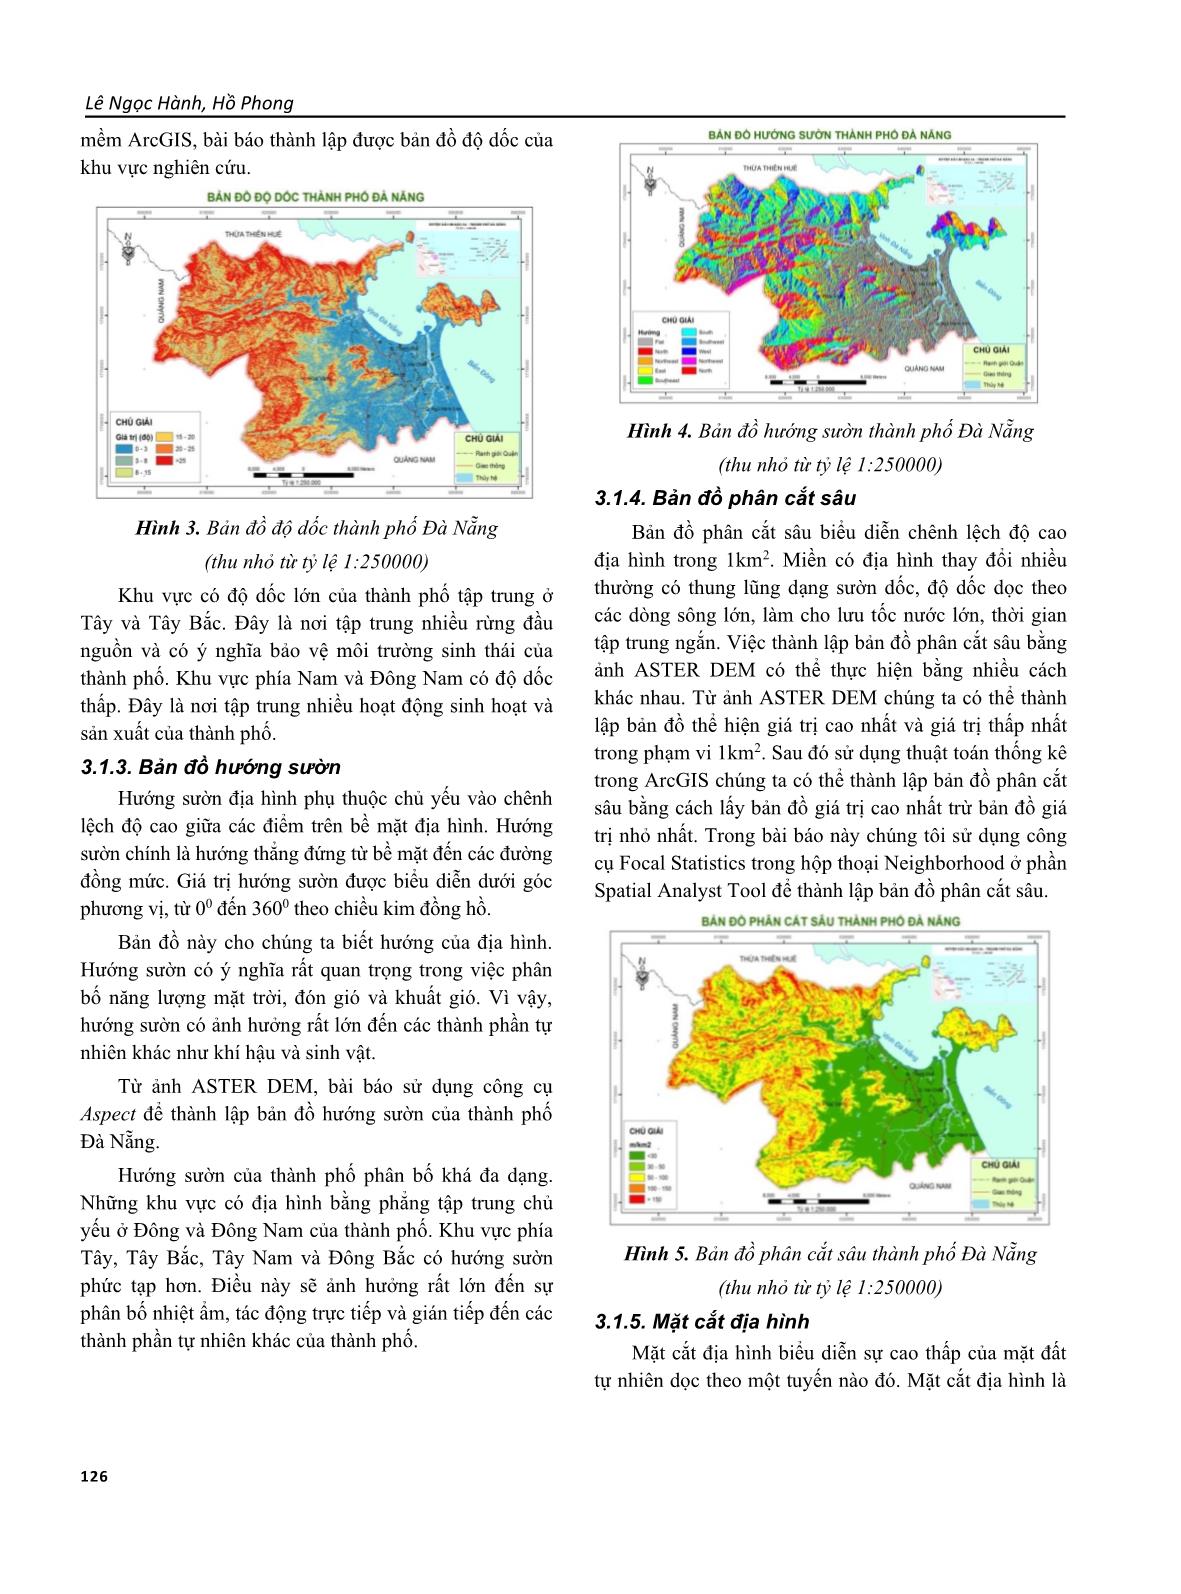 Phương pháp thành lập một số bản đồ địa mạo và thủy văn thành phố Đà Nẵng bằng ảnh viễn thám phục vụ dạy học và nghiên cứu trang 3